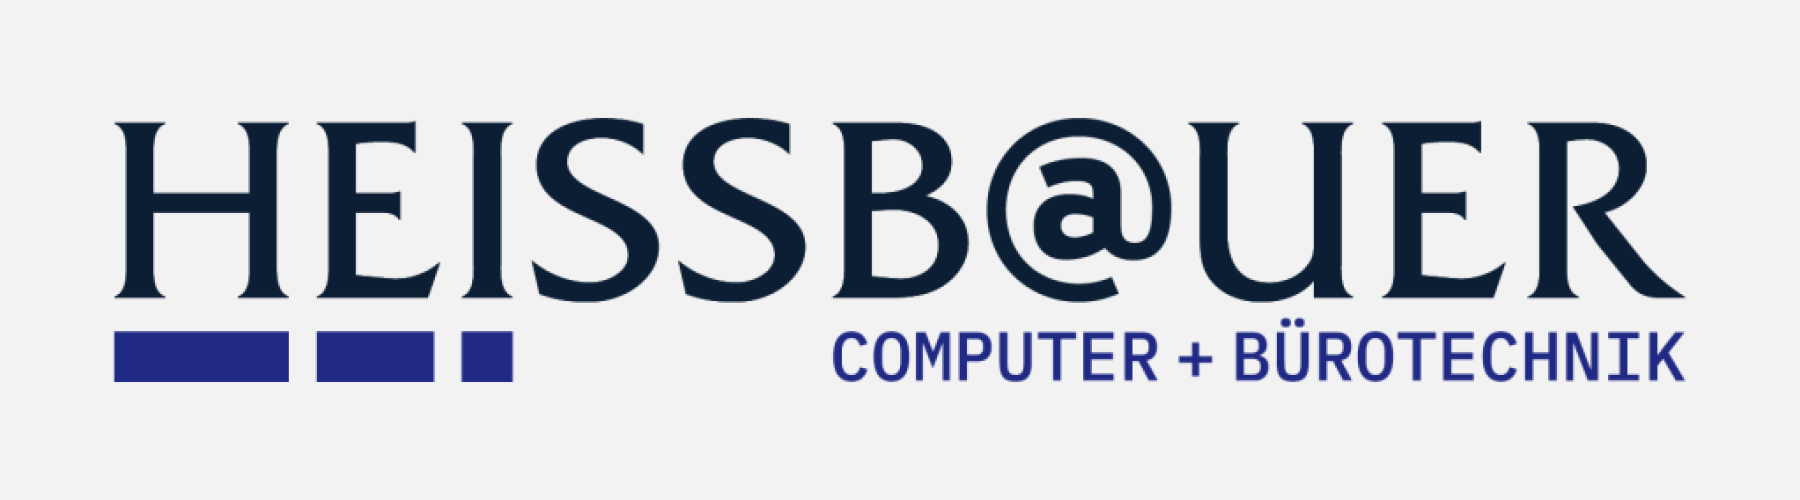 HEISSBAUER-Logo-web